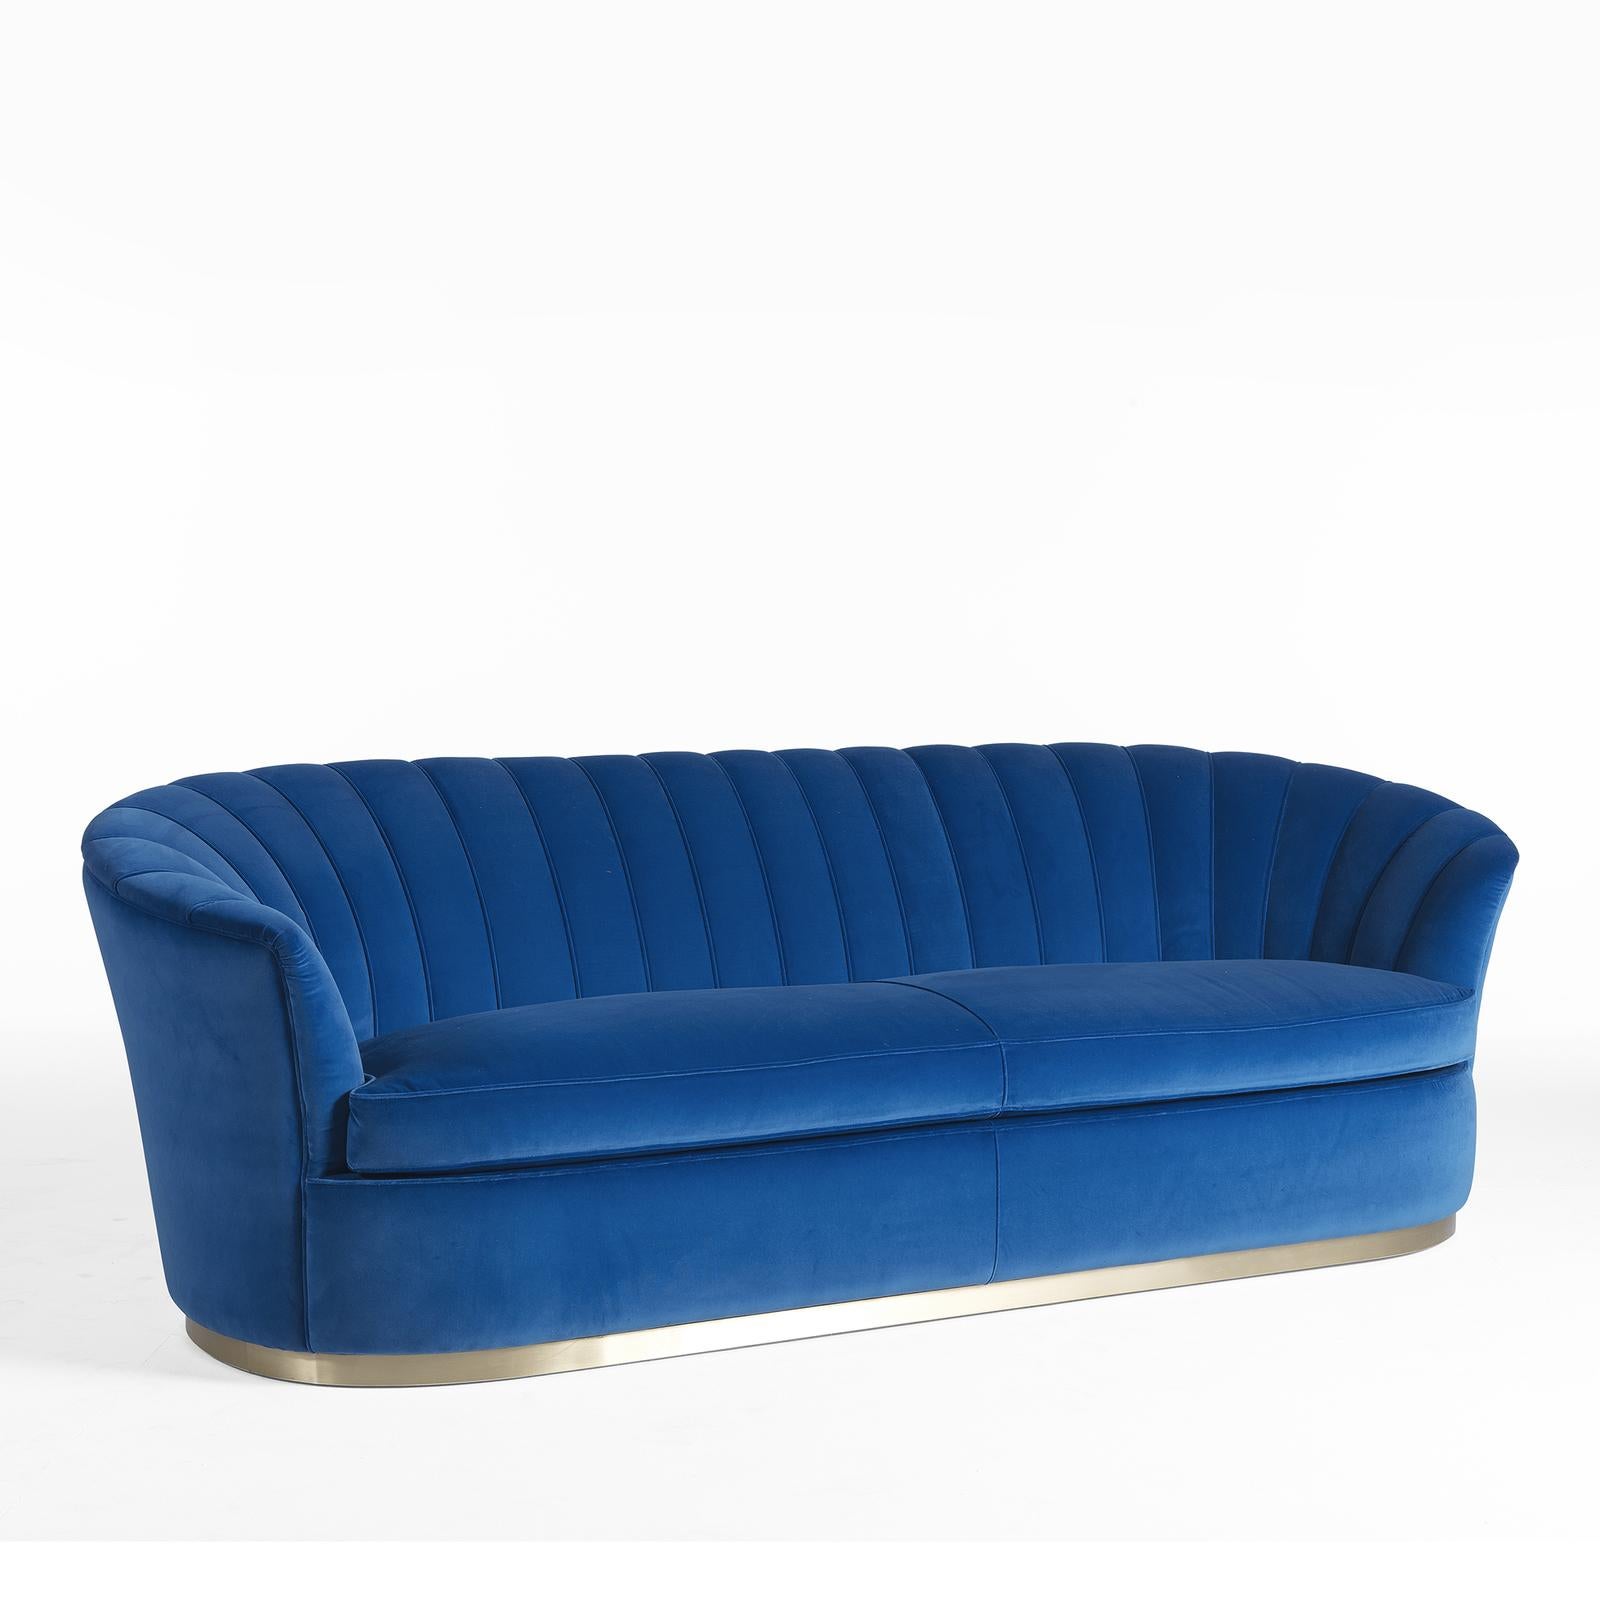 Dieses bezaubernde Sofa setzt mit seinen kräftigen Farben und seiner klassischen Silhouette ein Zeichen. Der Massivholzrahmen ist eine moderne Neuinterpretation eines antiken Cabrio-Sofas. Die geschwungene Rückenlehne, die in die abgeschrägten